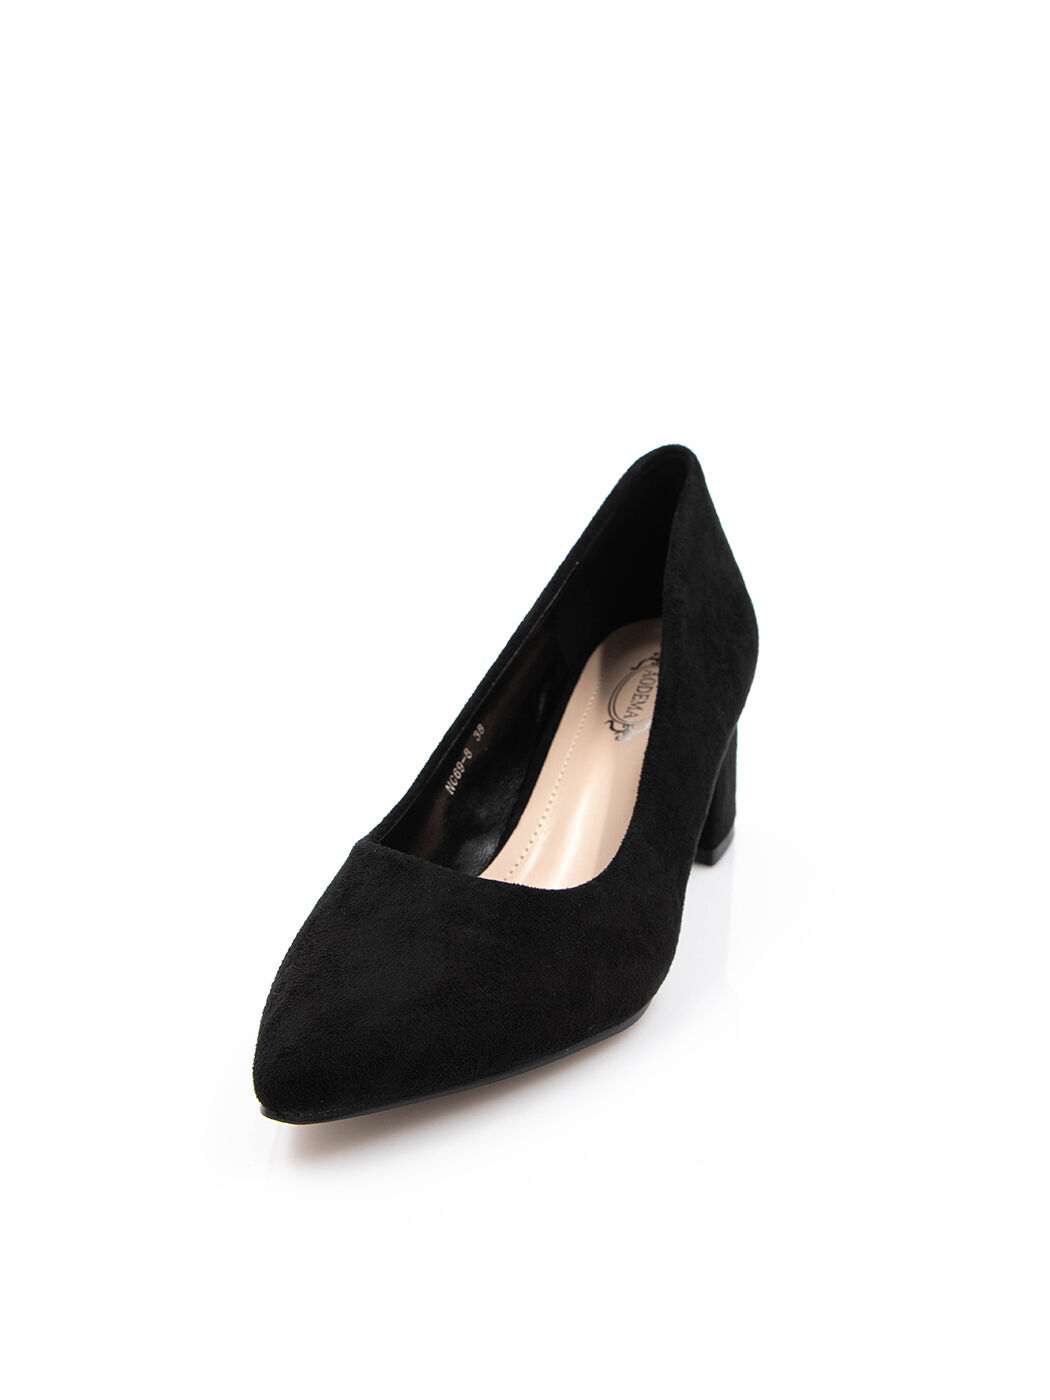 Туфли женские черные экозамша каблук устойчивый демисезон от производителя 8M вид 2